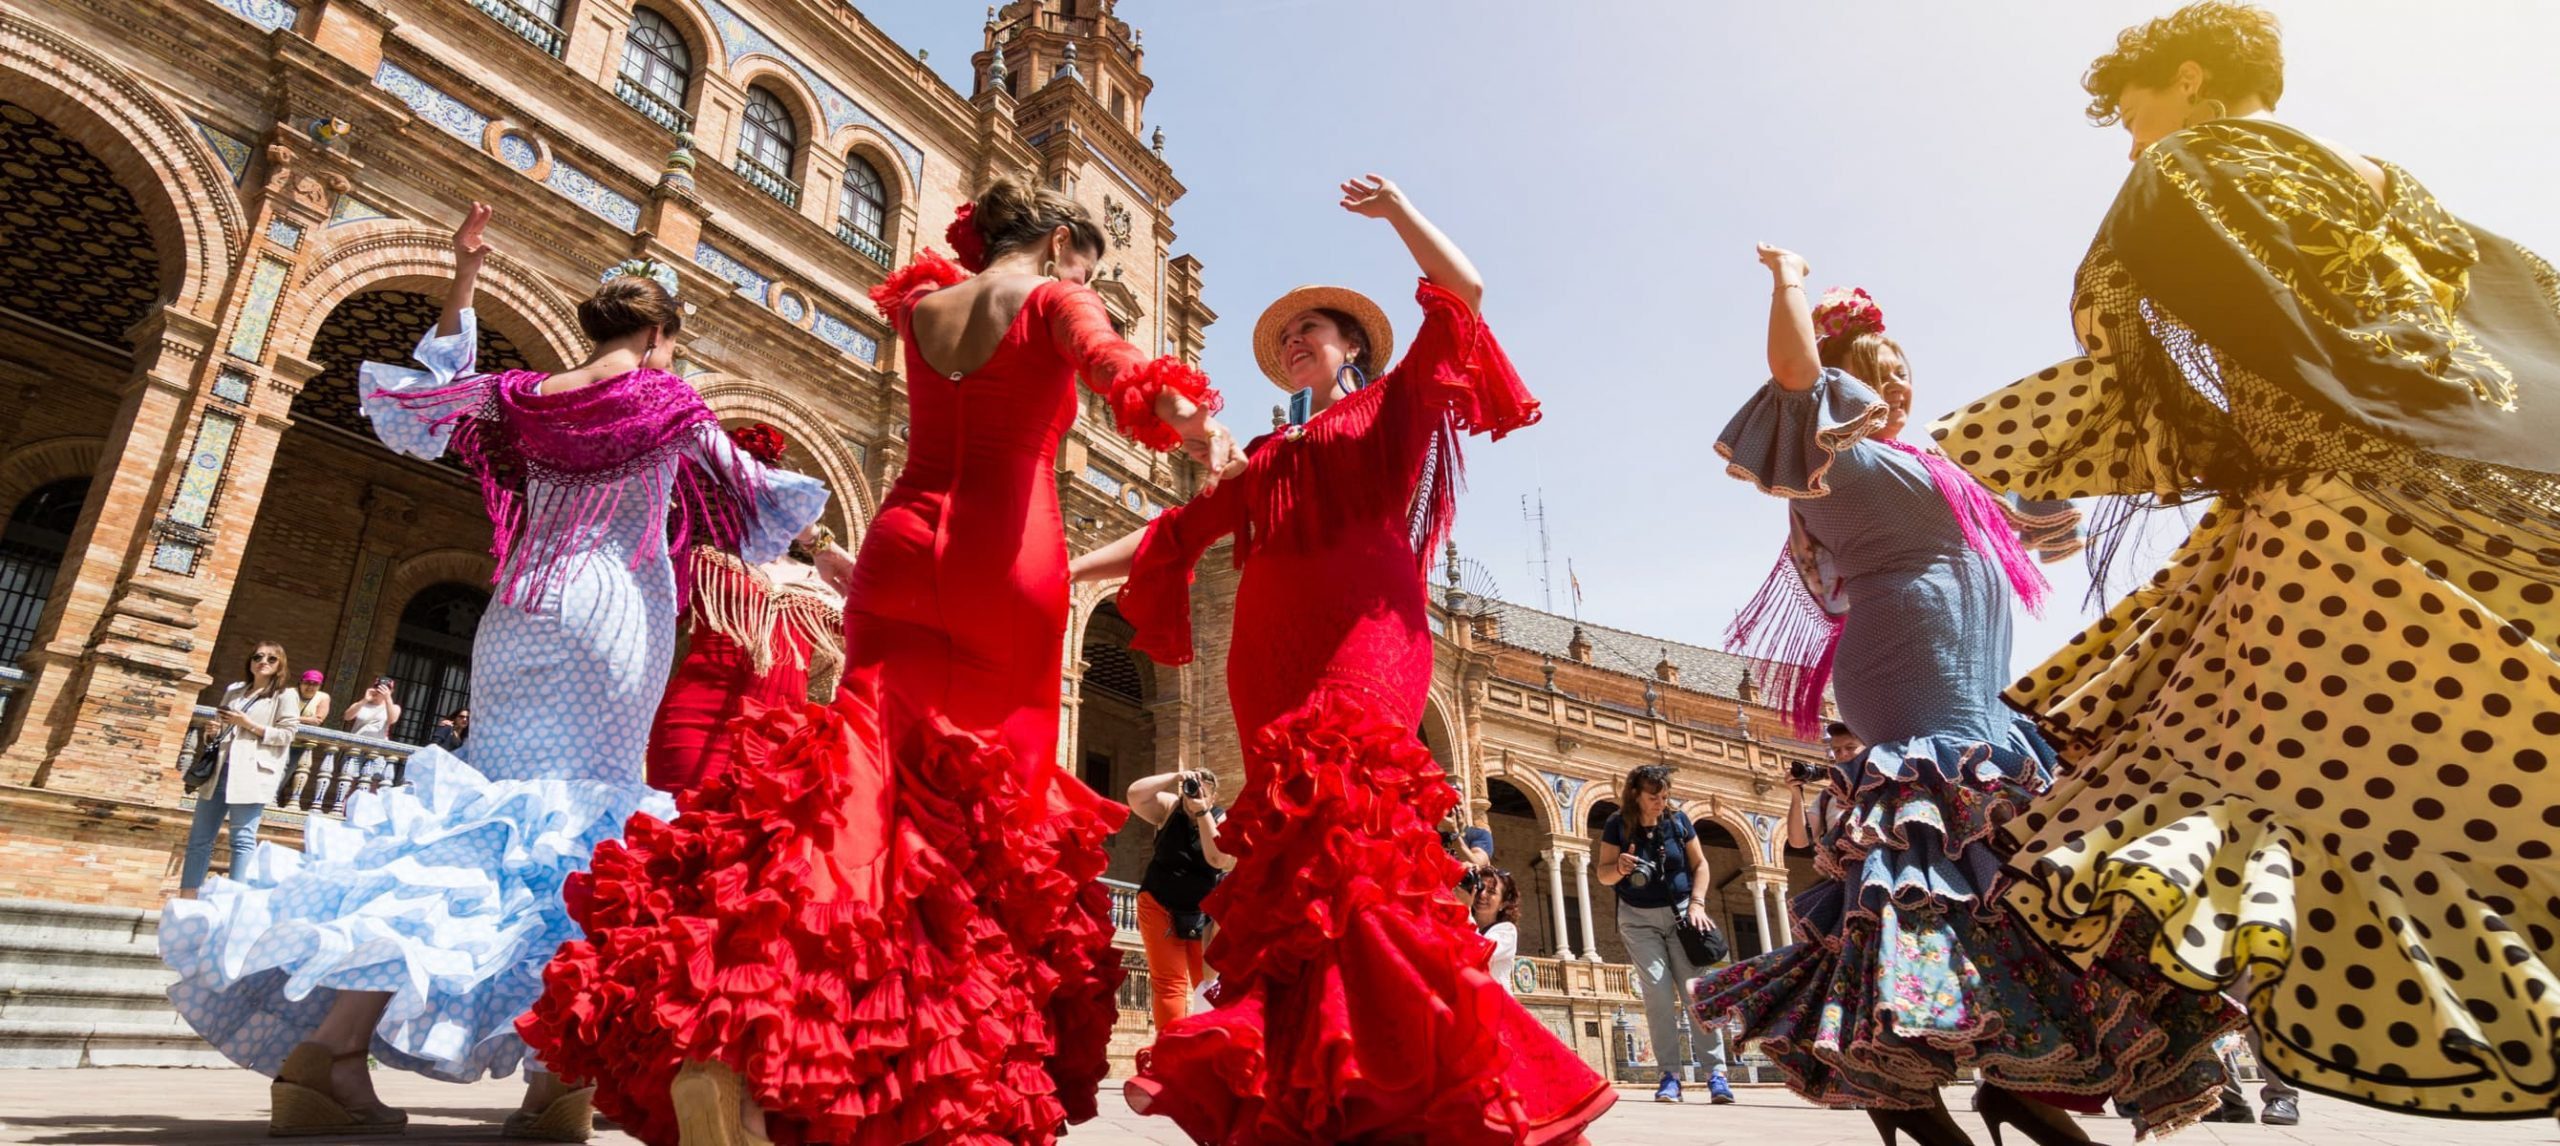 Young women dance flamenco on Plaza de Espana